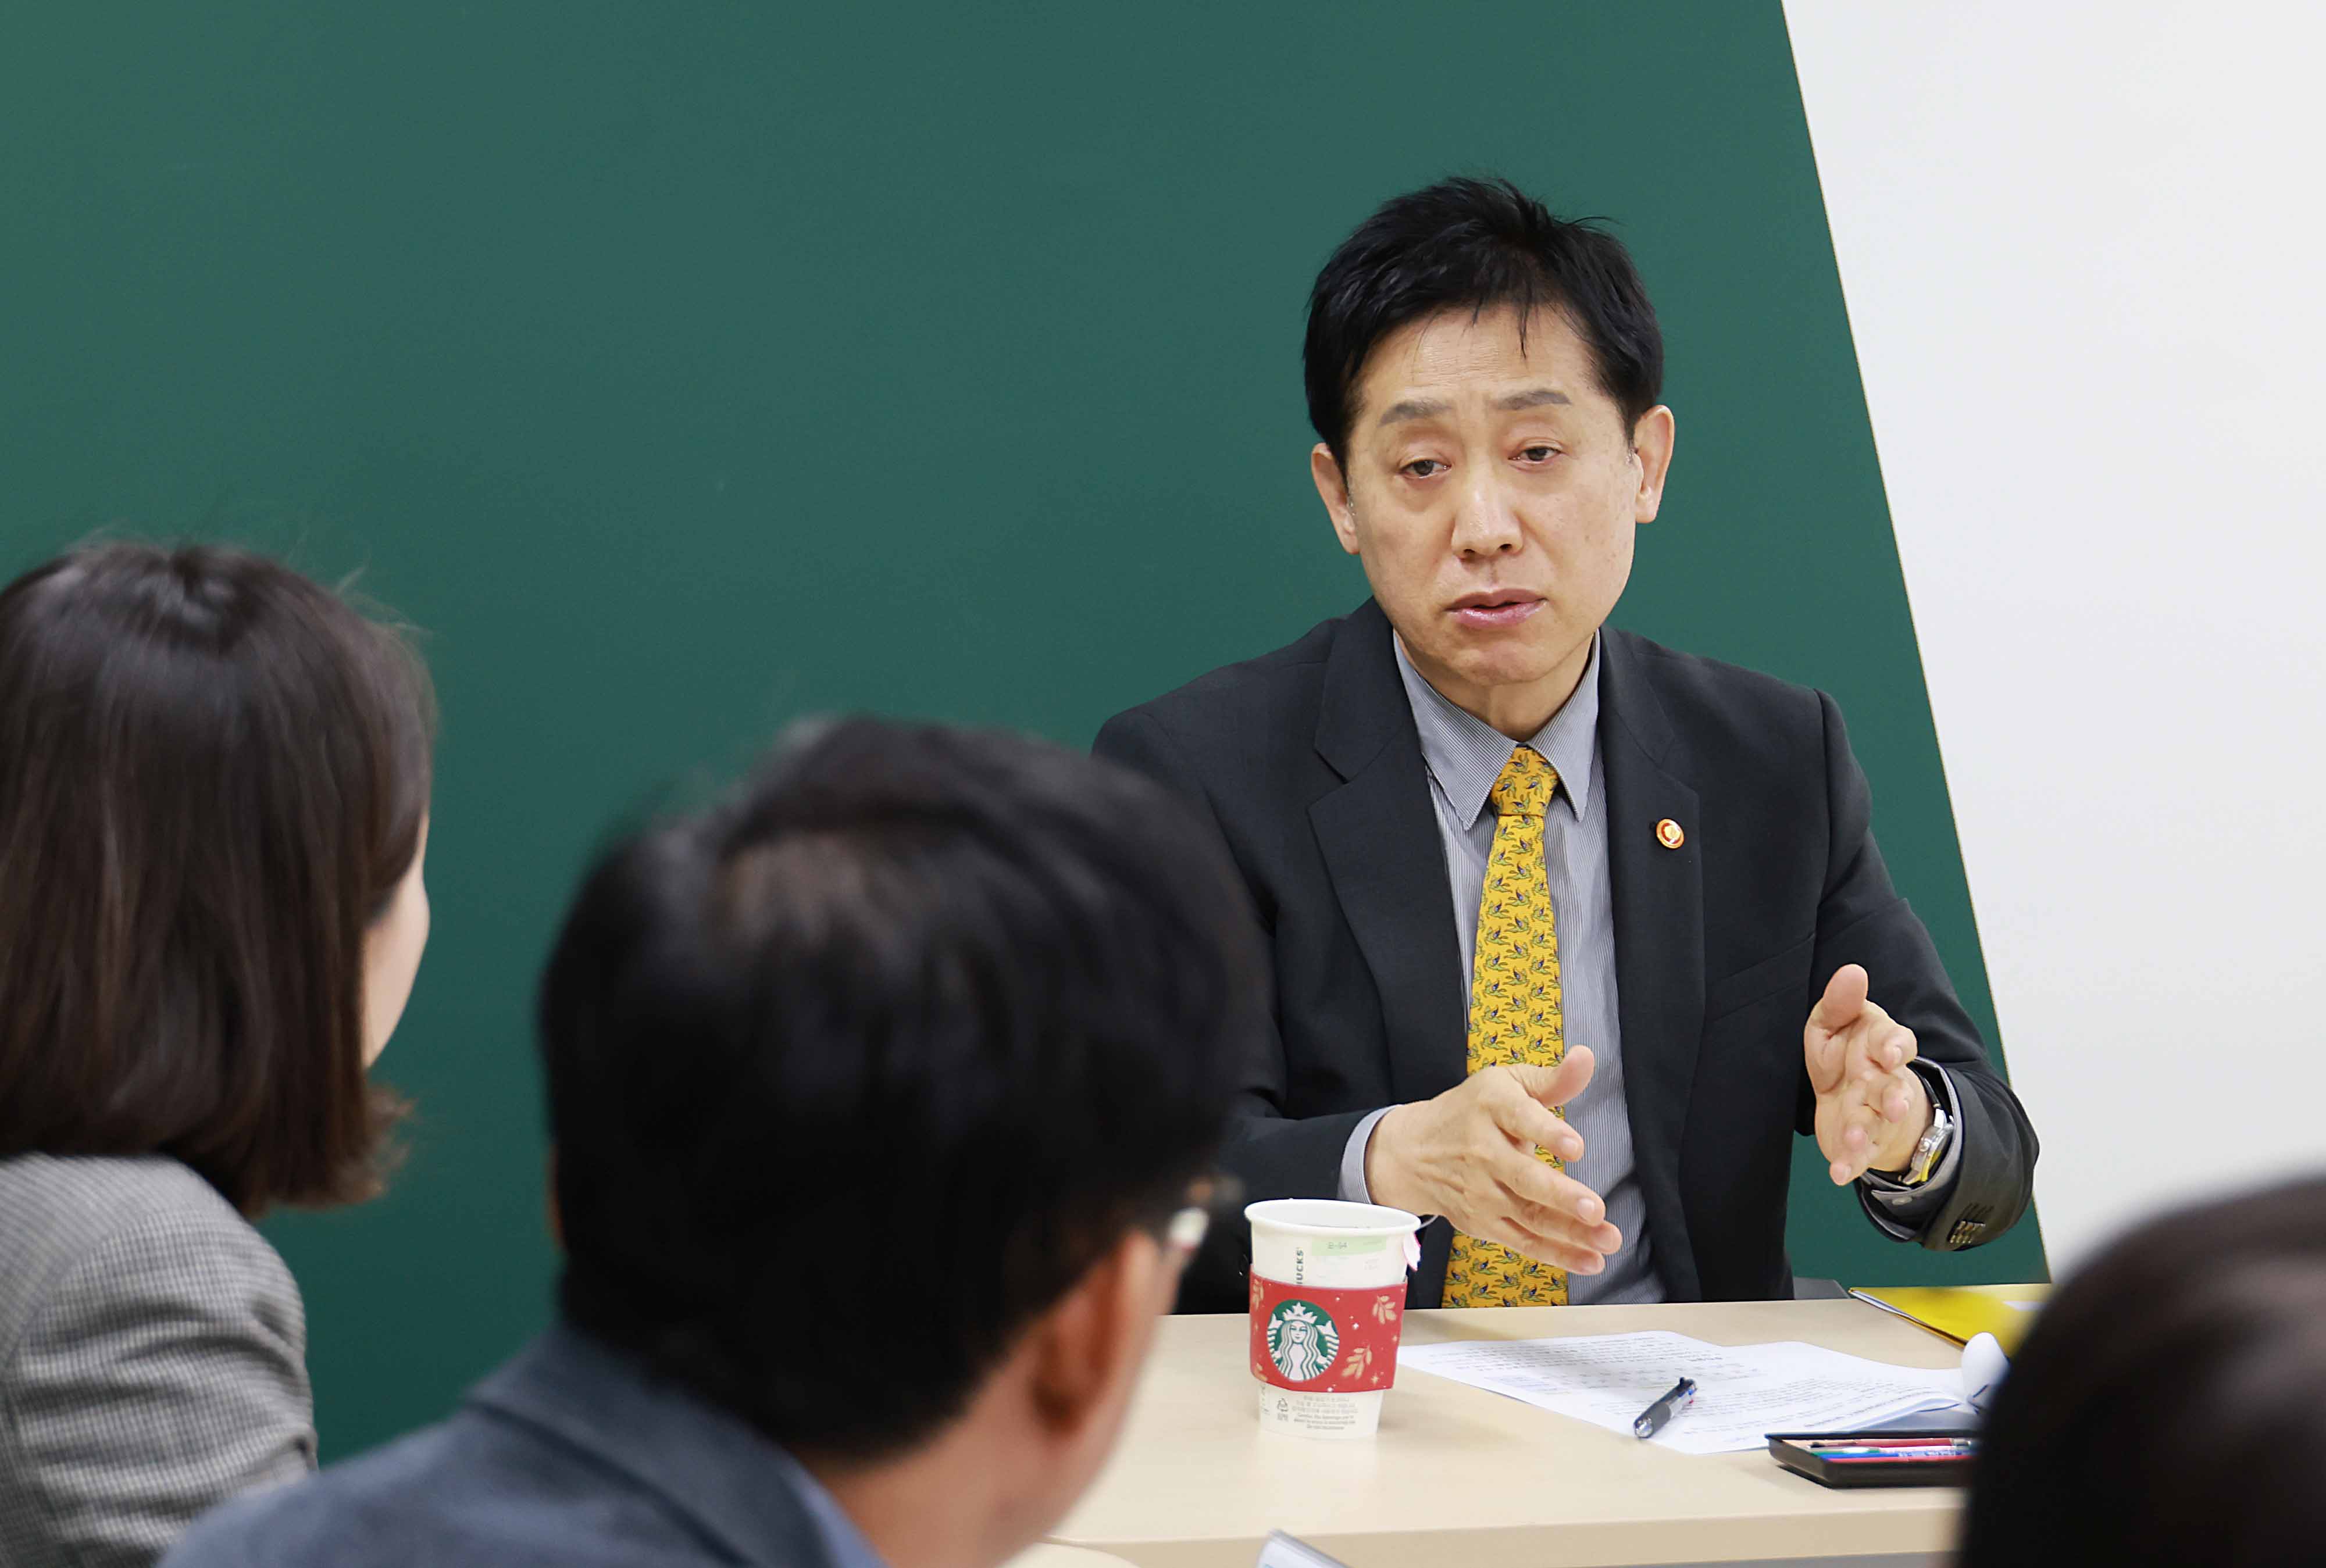 금융위원장, 청년·취약계층 민생현장 점검3